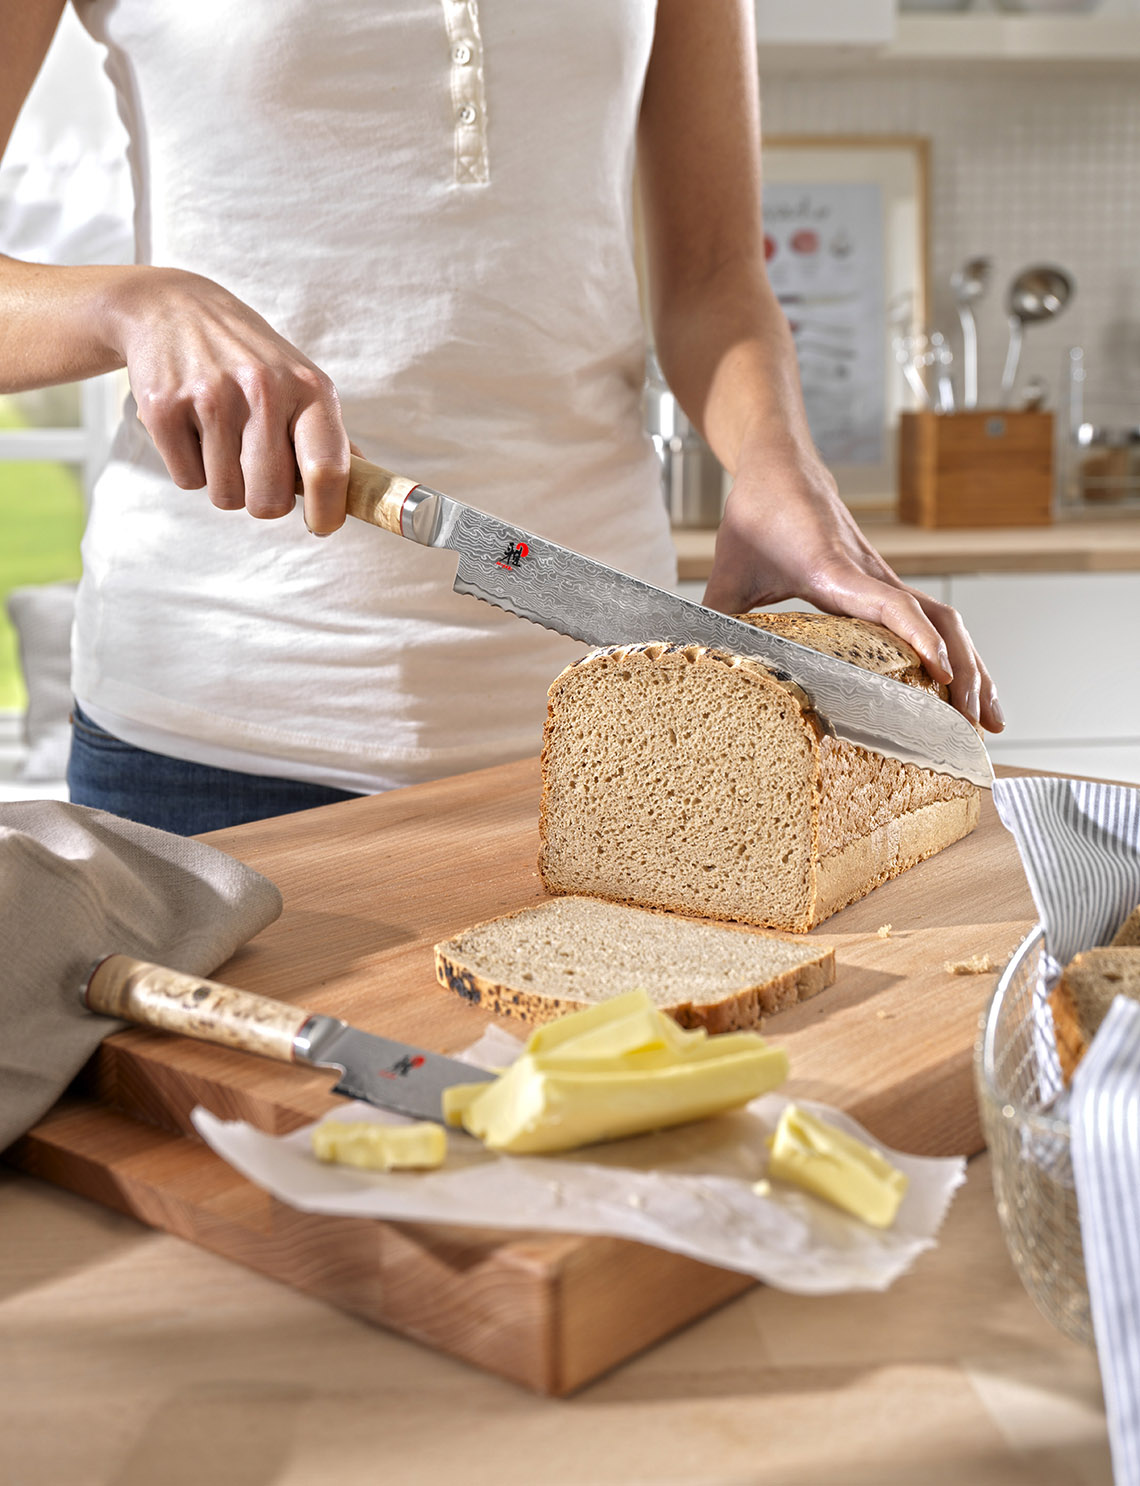 Dzięki nożom do pieczywa pyszny, domowy chleb uda się pokroić na równiutkie kromki